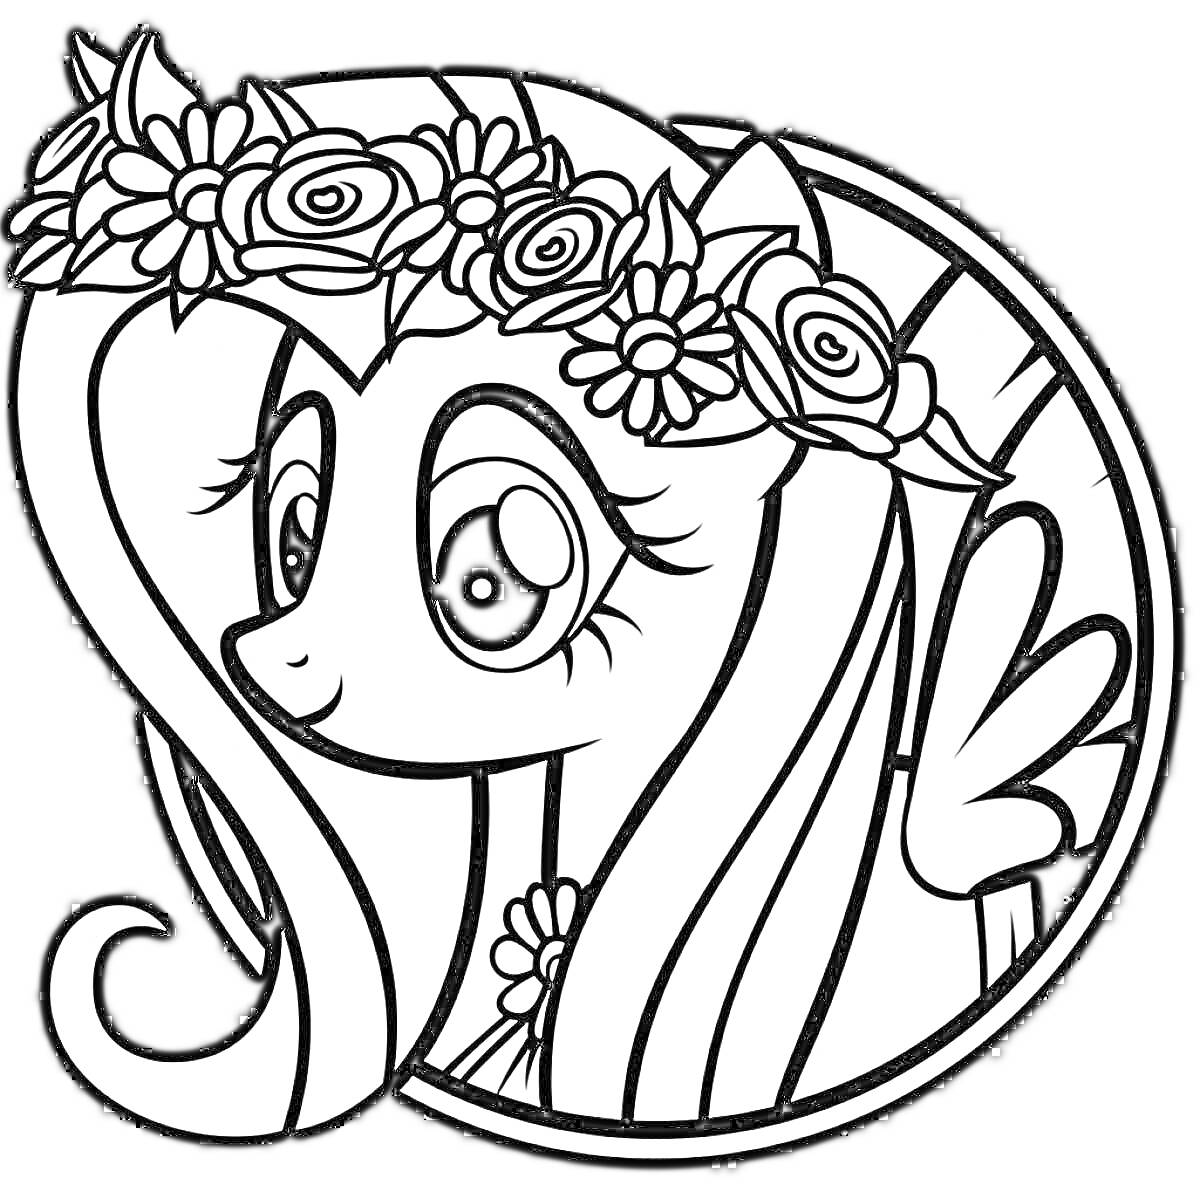 Раскраска Пони с цветочным венком на голове и цветами на шее в круглой рамке